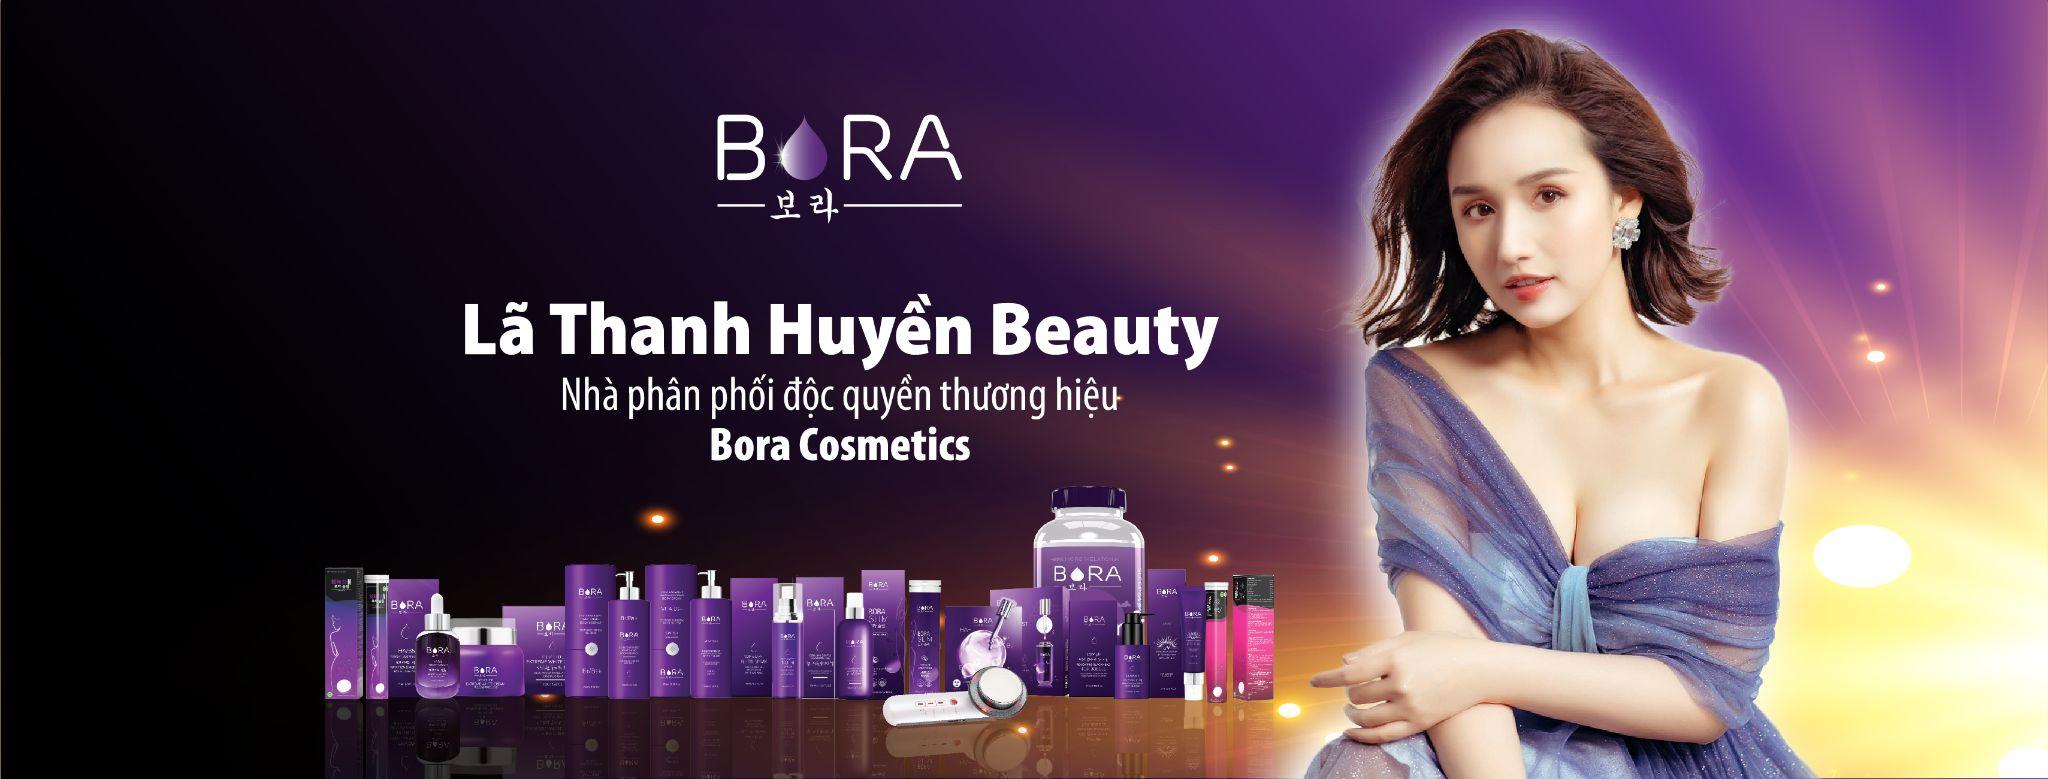 Sản phẩm - Dịch vụ - Lã Thanh Huyền Beauty - Hành trình mới nâng tầm thương hiệu mỹ phẩm Bora (Hình 3).